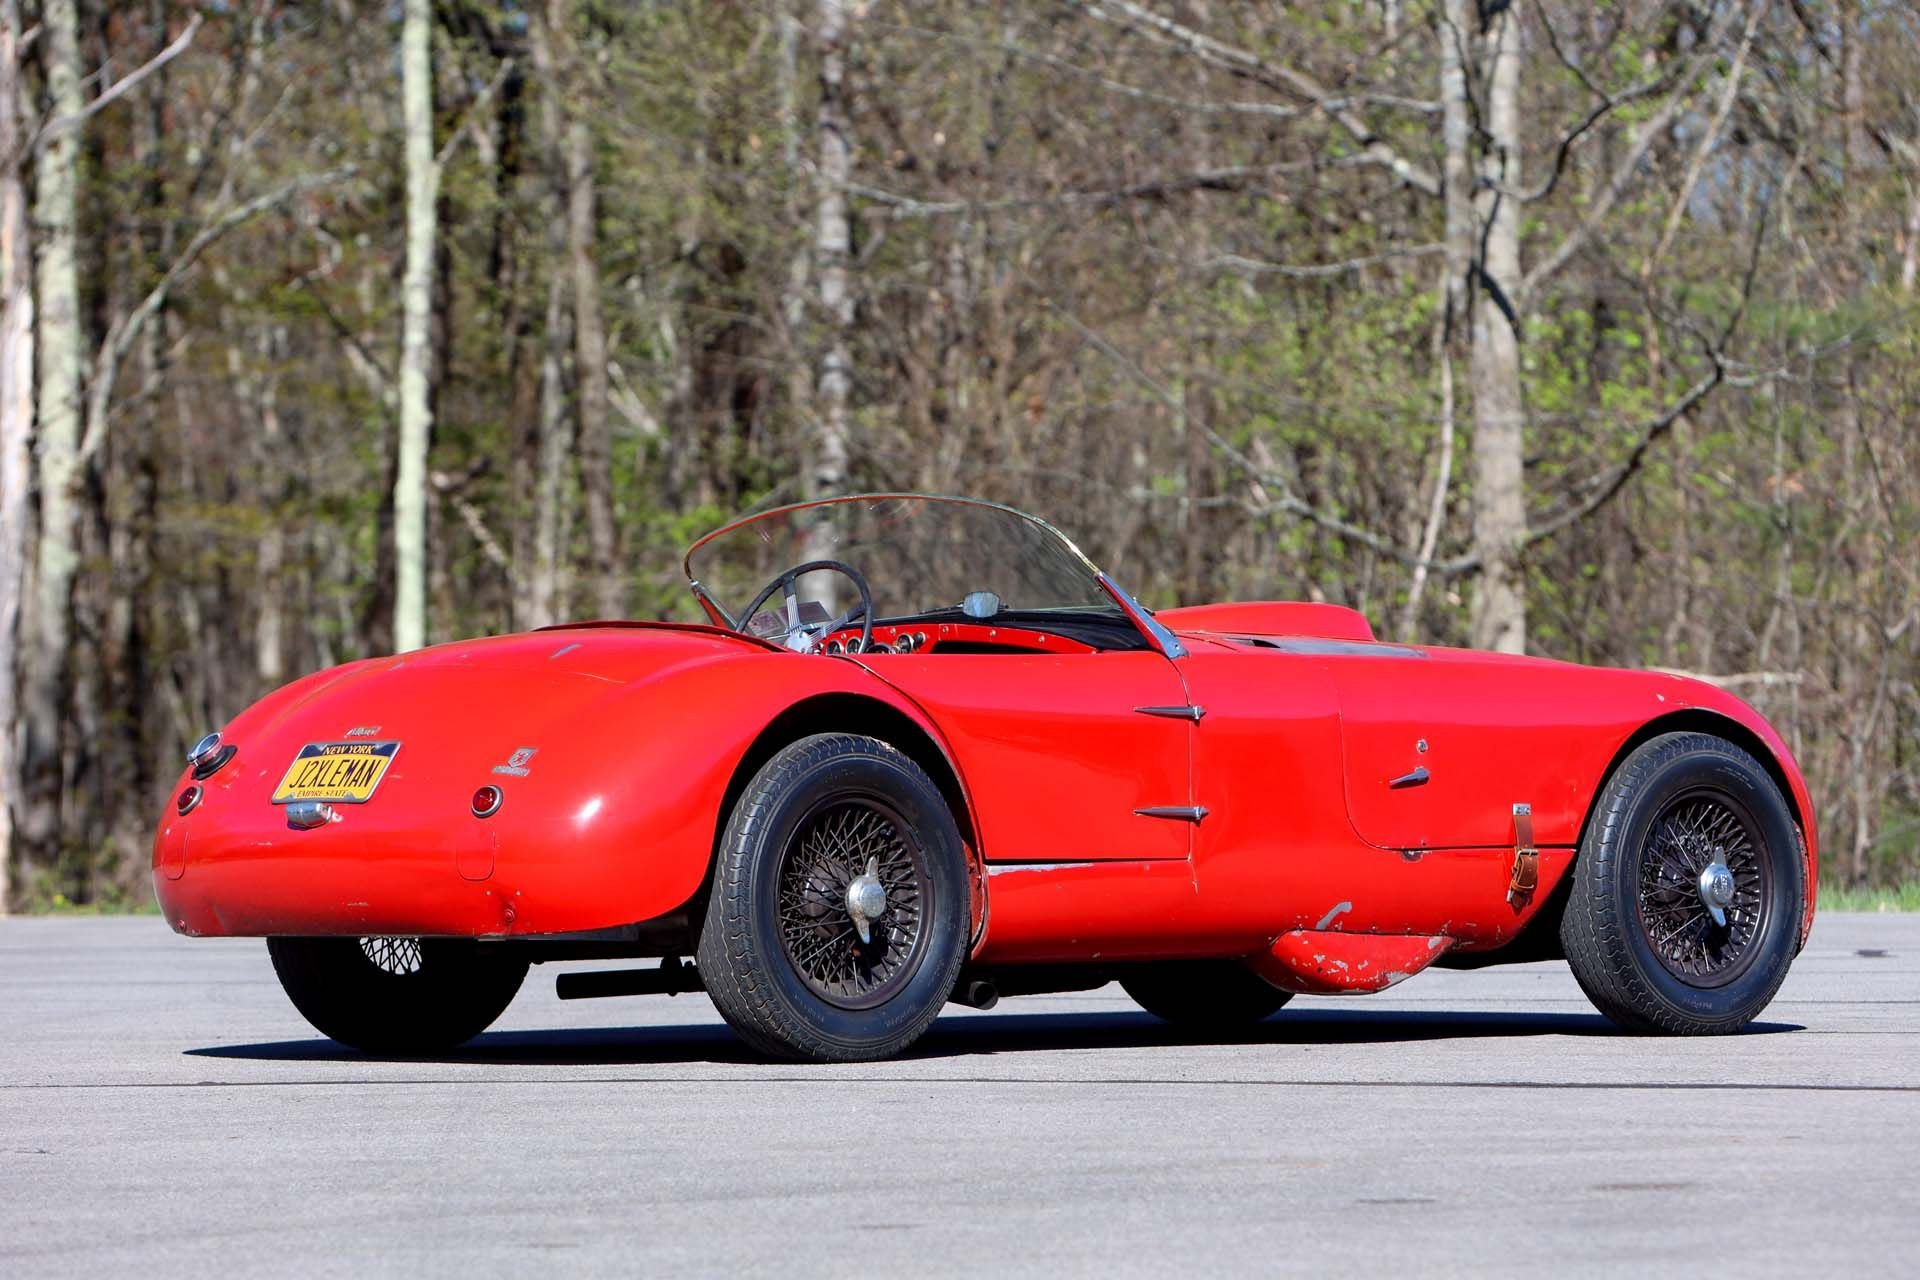 For Sale 1953 Allard J2X Le Mans